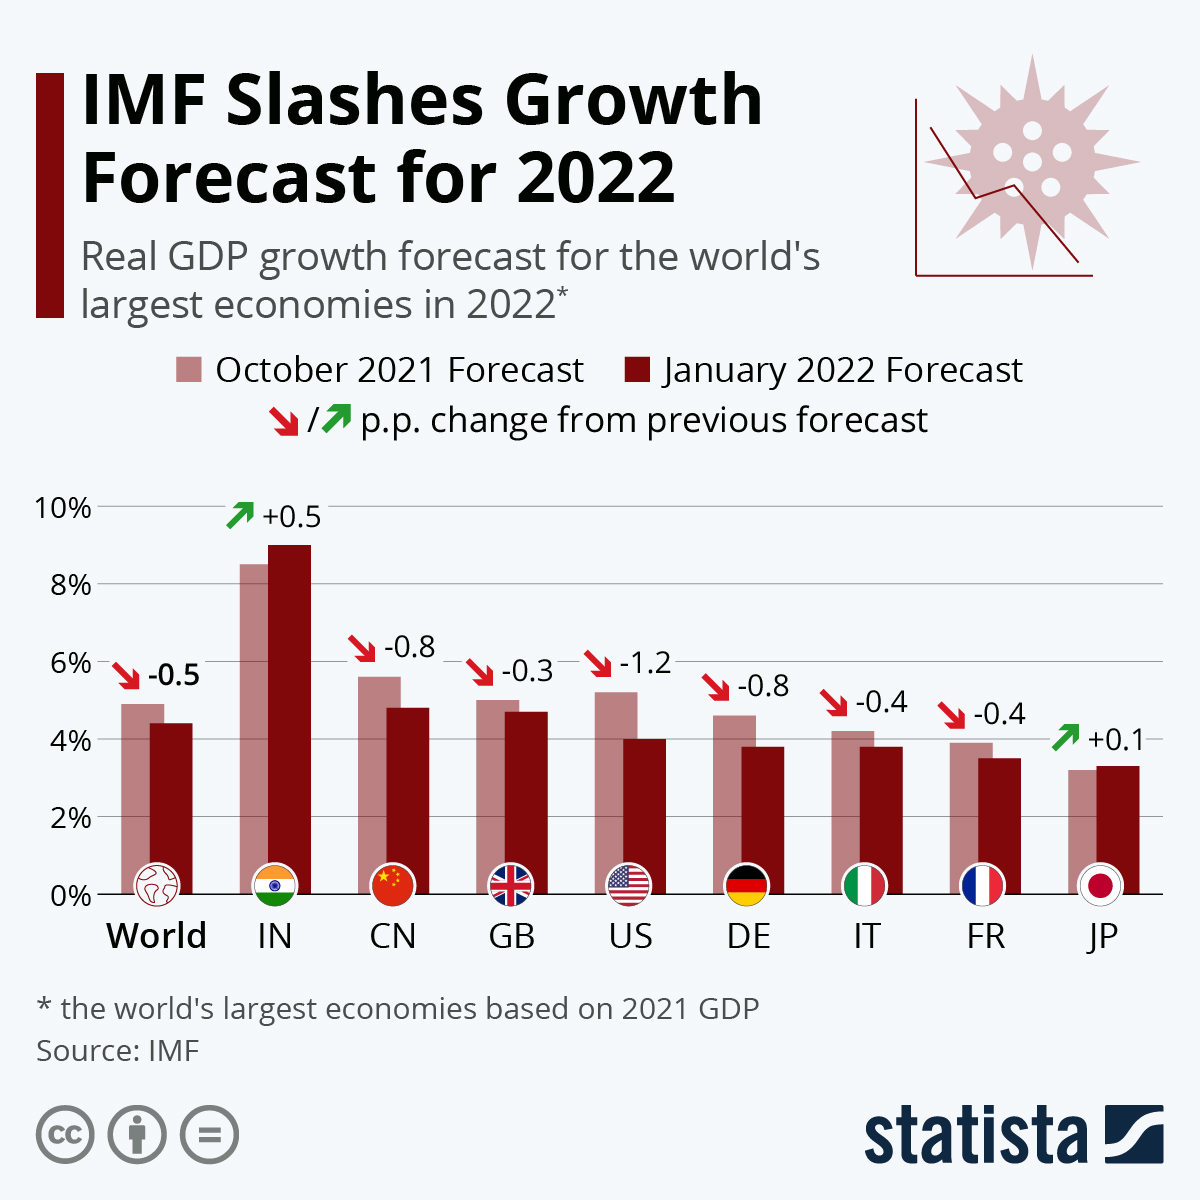 IMF Slashes Growth Forecast for 2022